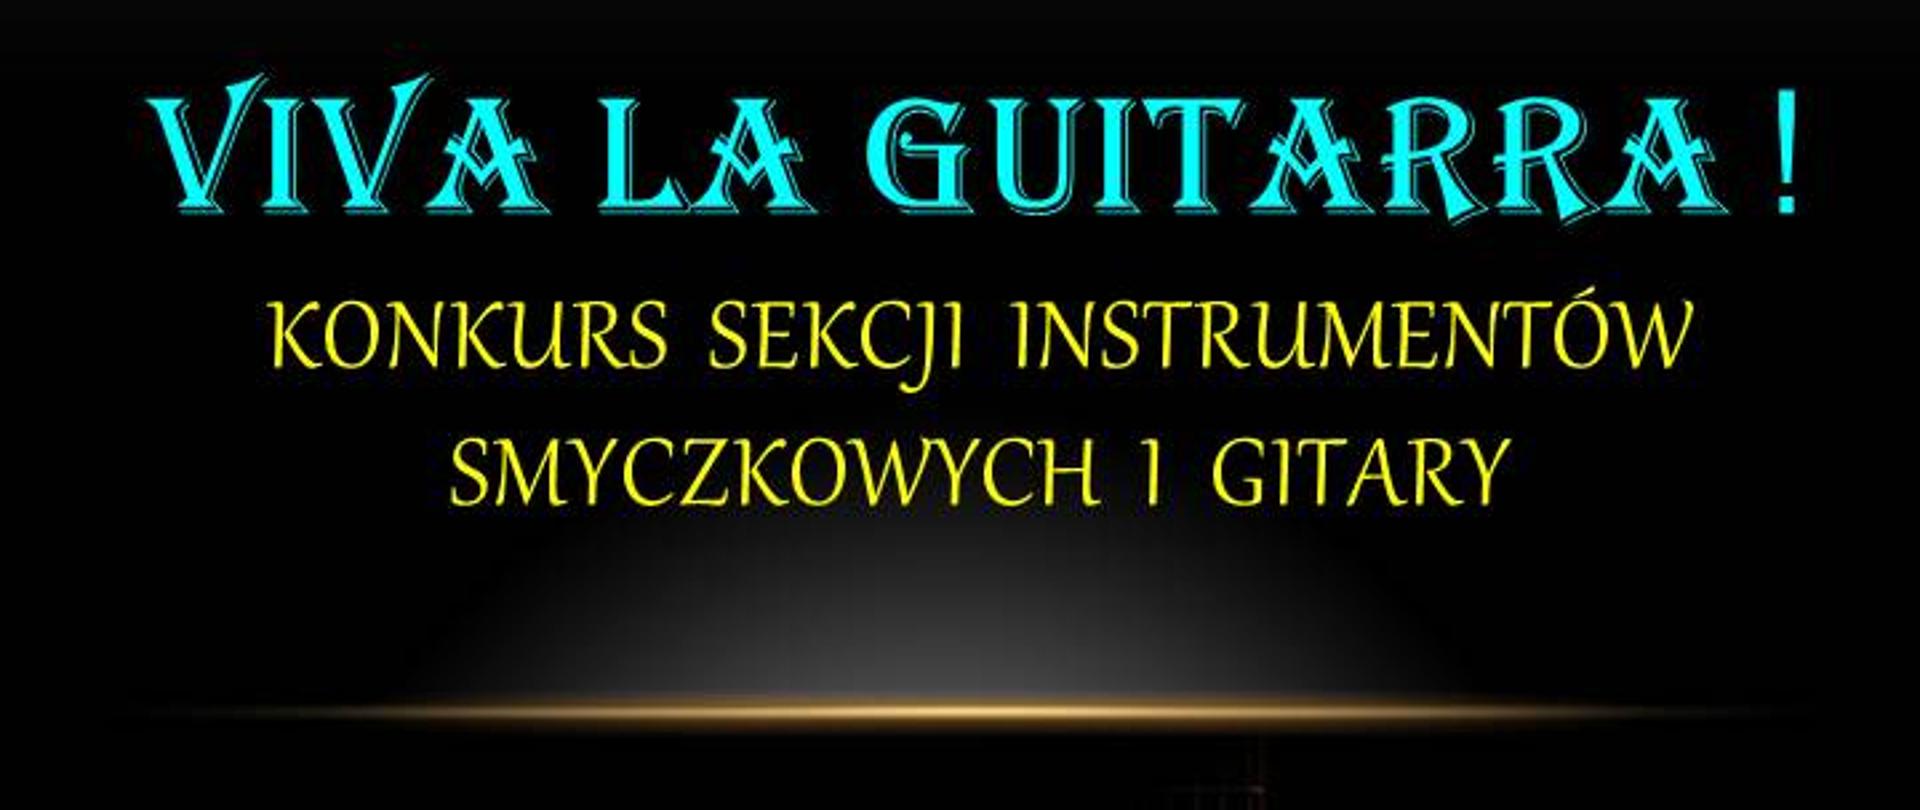 Afisz do konkursu Viva la Guitarra. Na czarnym tle informacje o wydarzeniu, z prawej strony obrazek gitary.